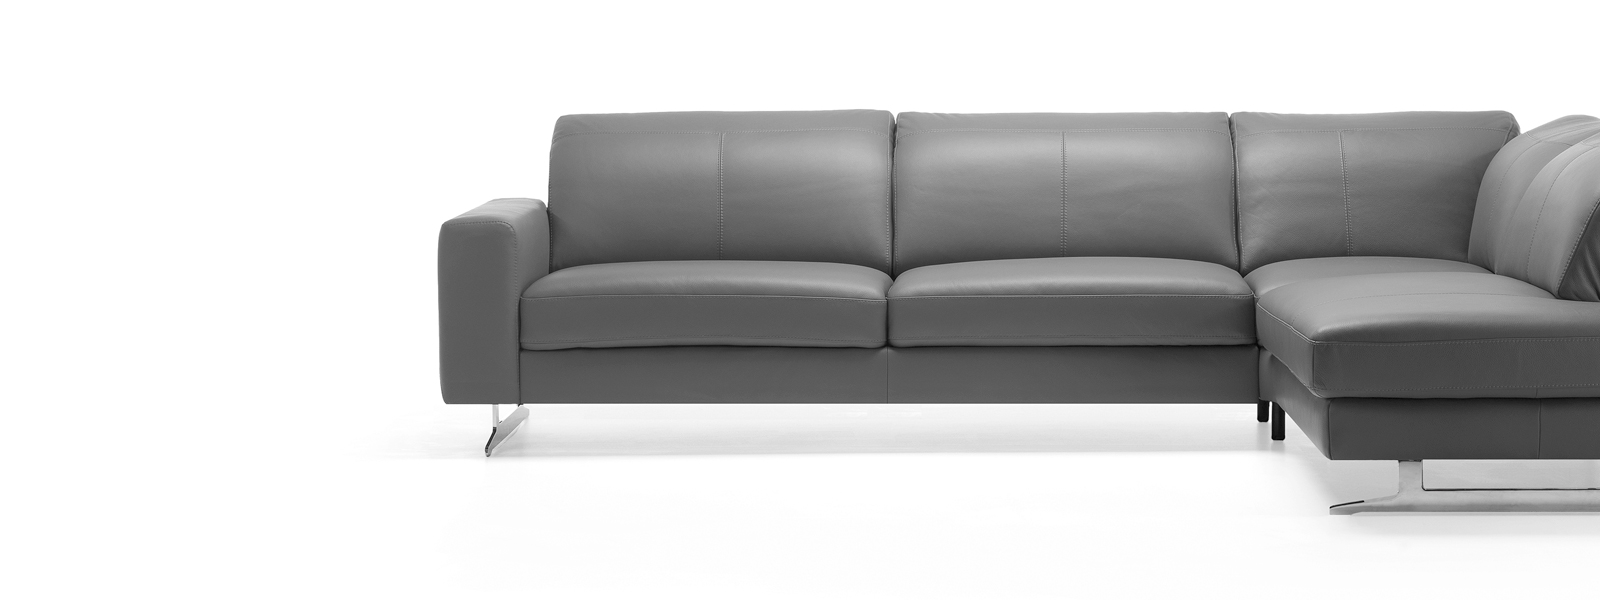 rom sofa home 02